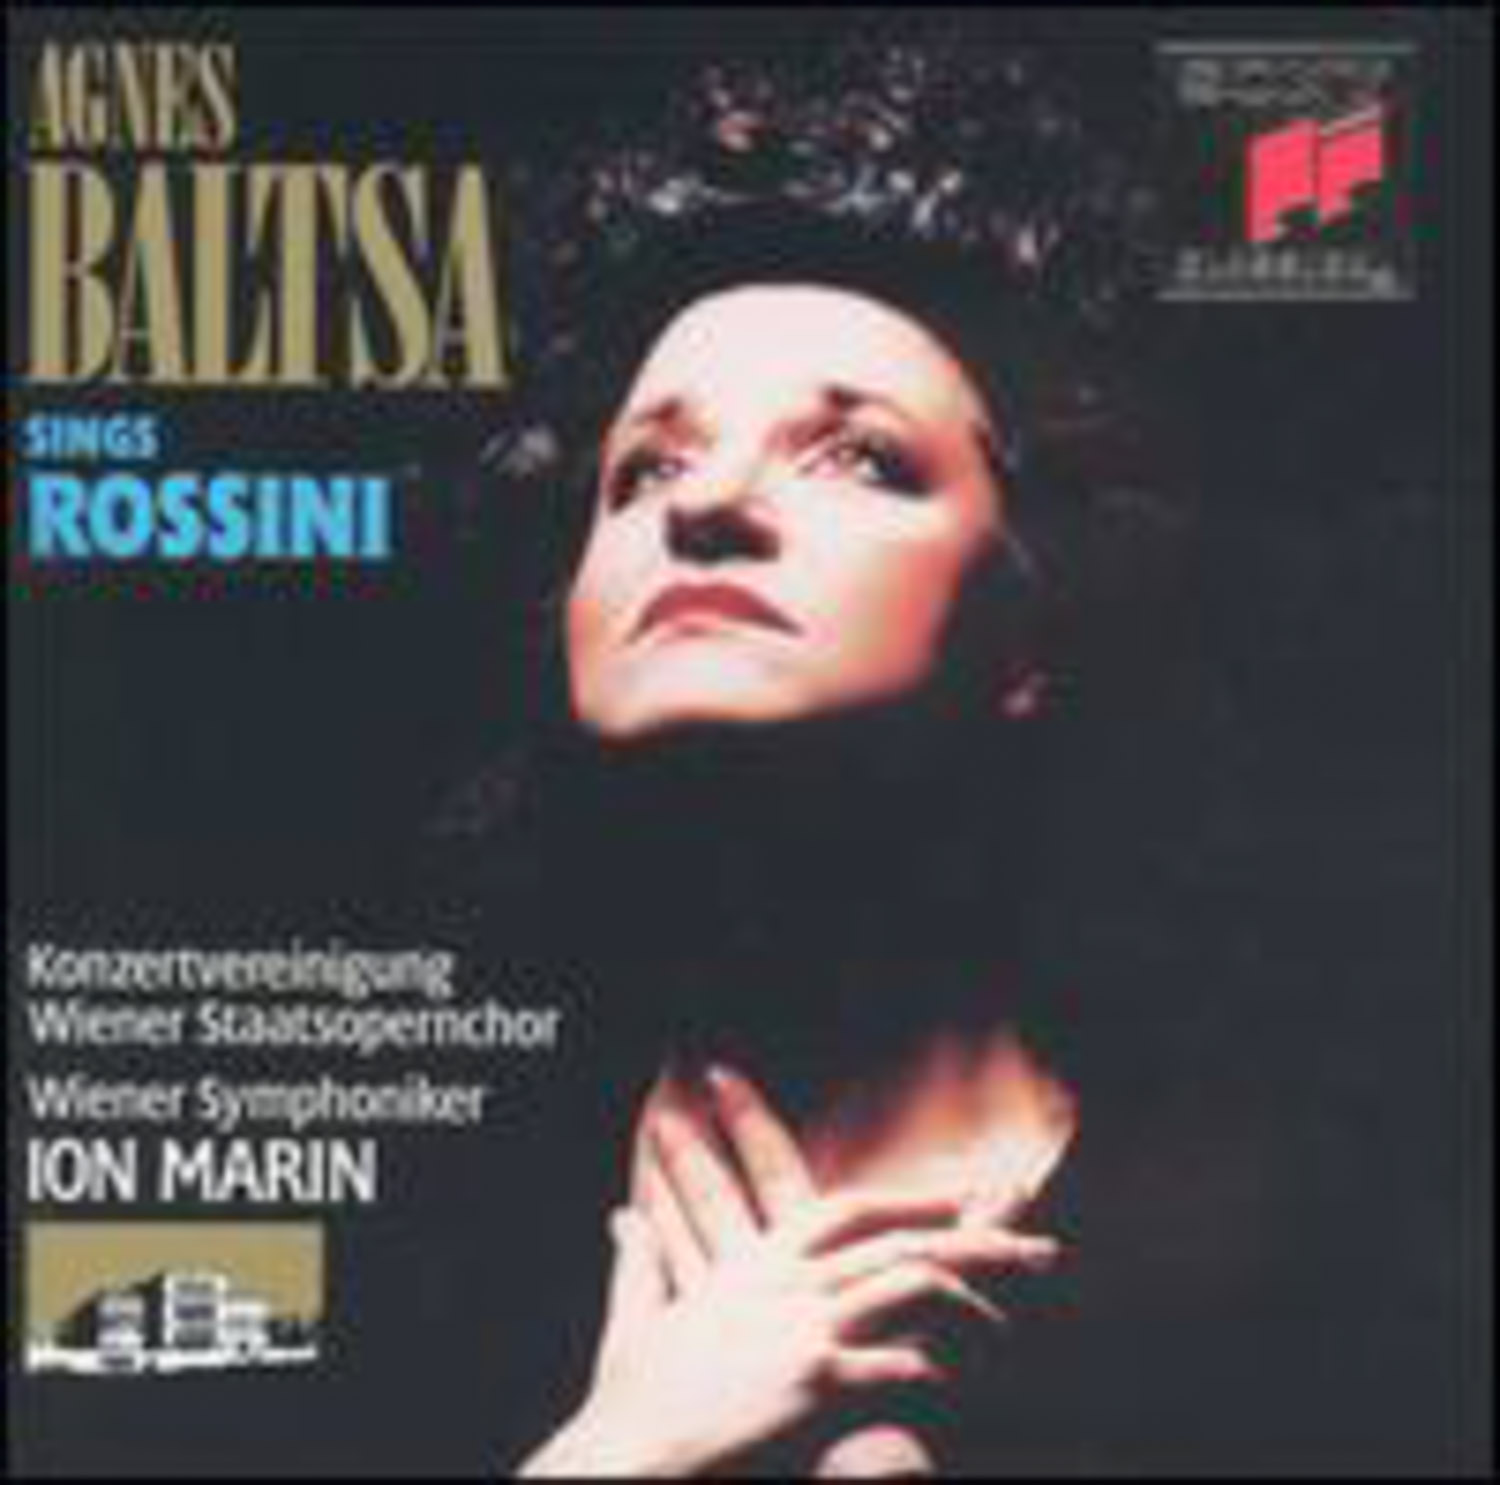 Agnes Baltsa; Ion Marin, Wiener Symphoniker  Agnes Baltsa sings Rossini  *Audio-CD*. 